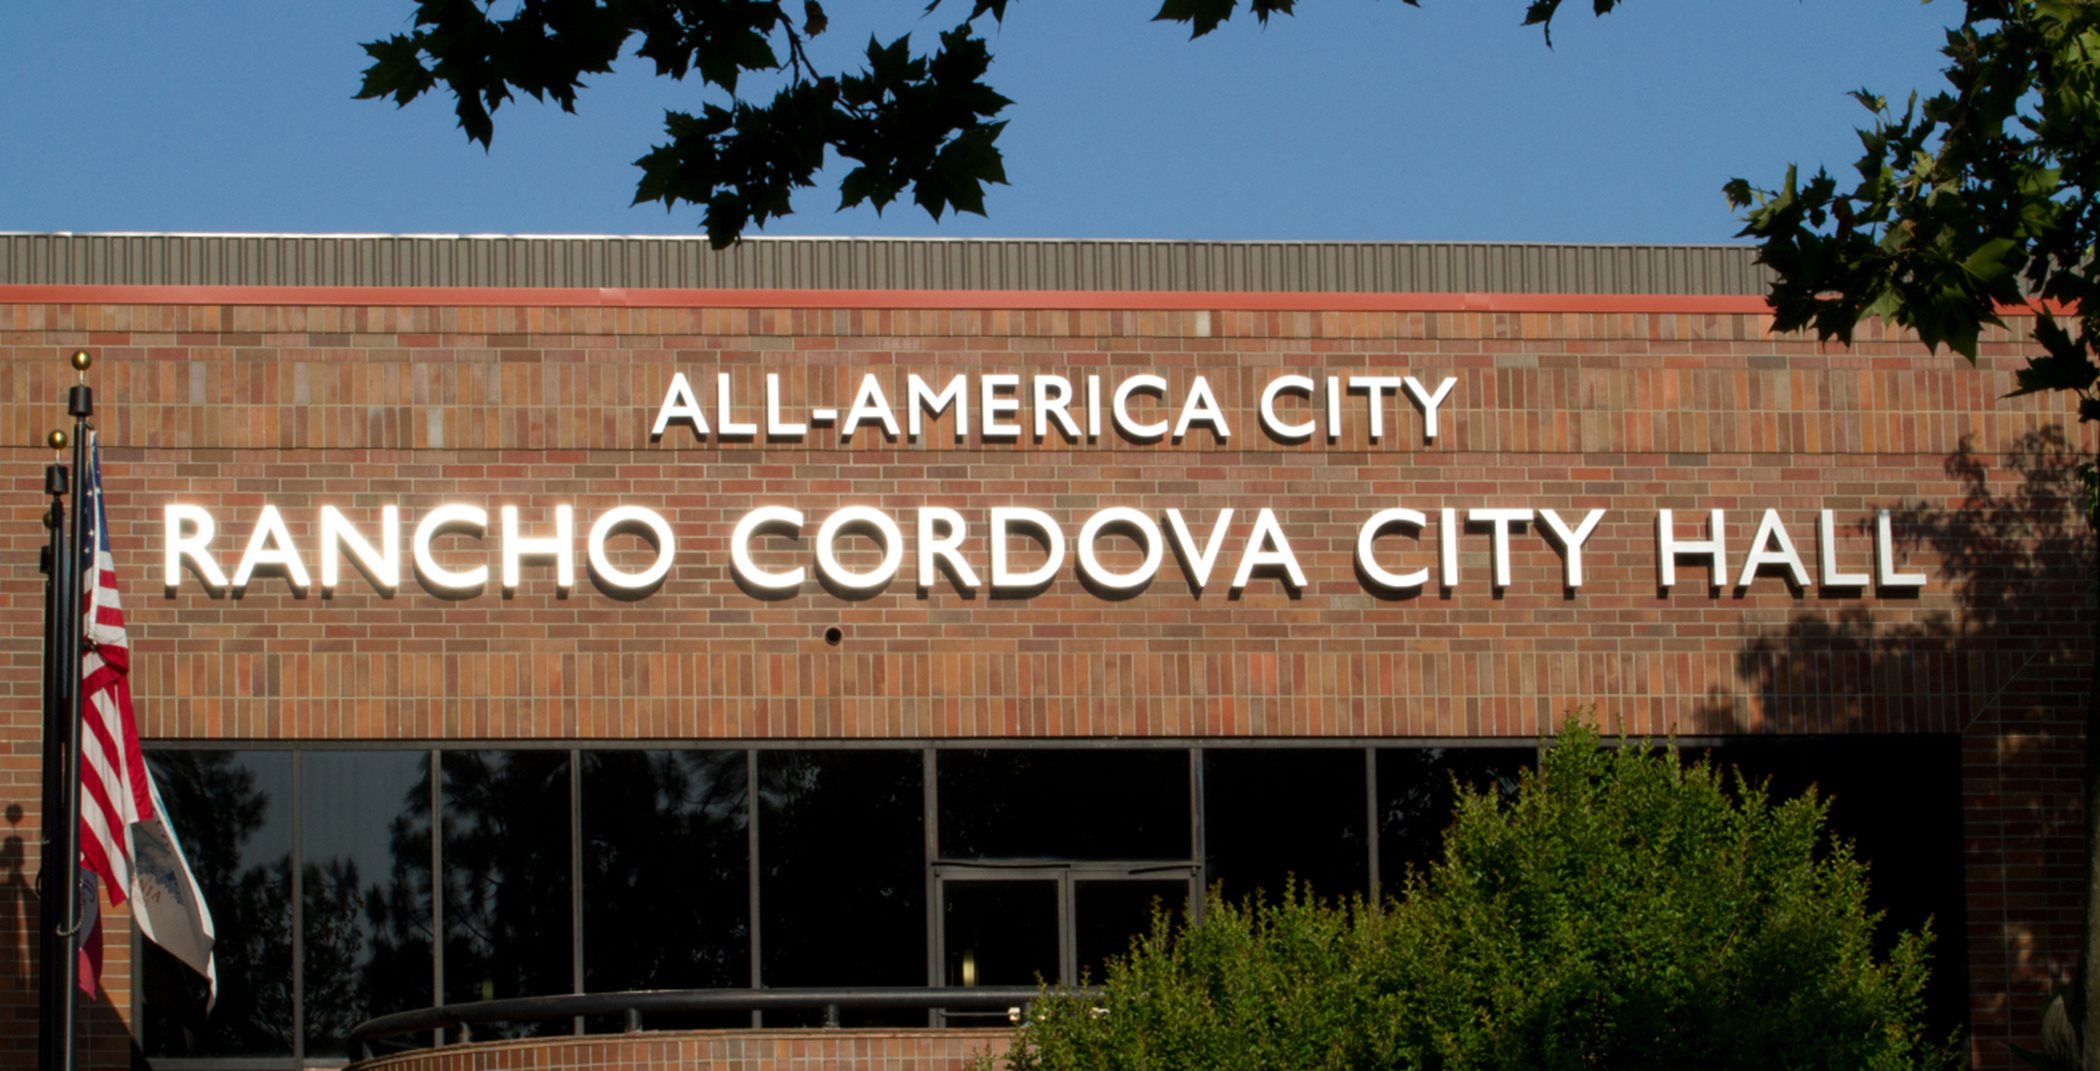 Rancho Cordova City Hall exterior